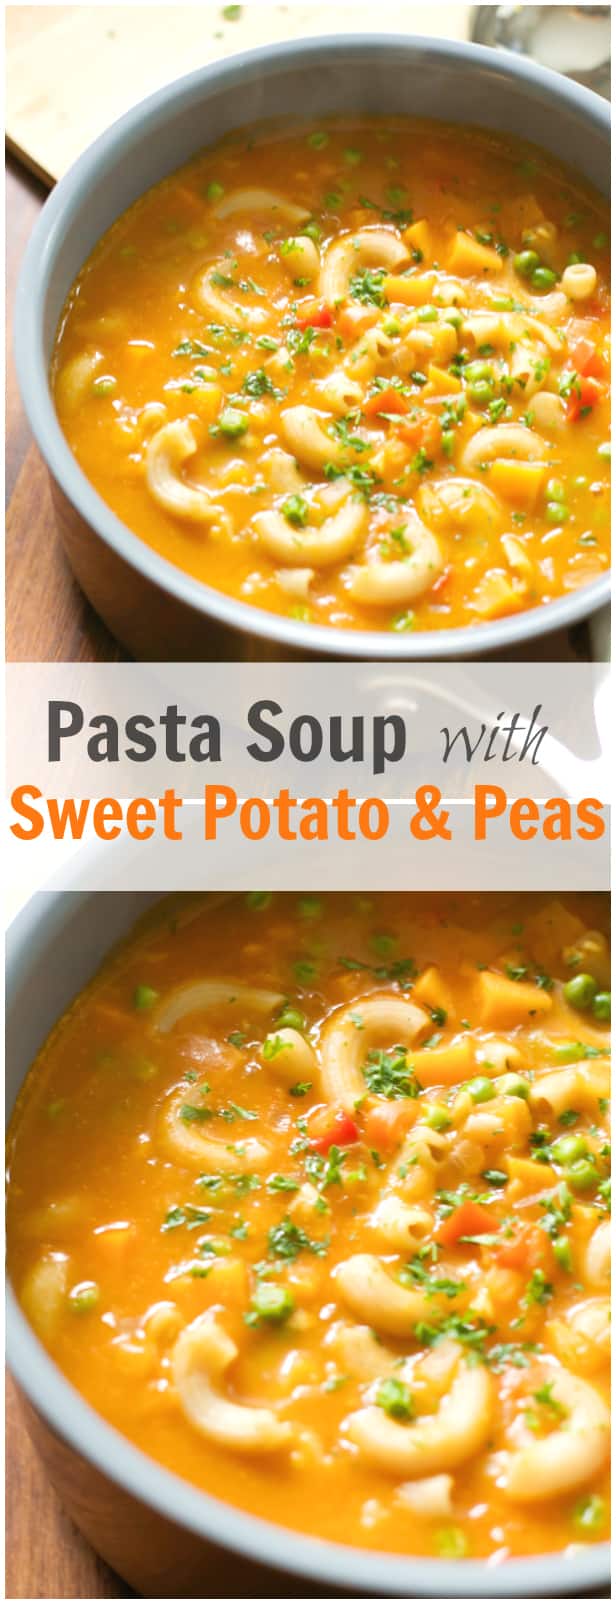 Pasta Soup with Sweet Potato & Peas